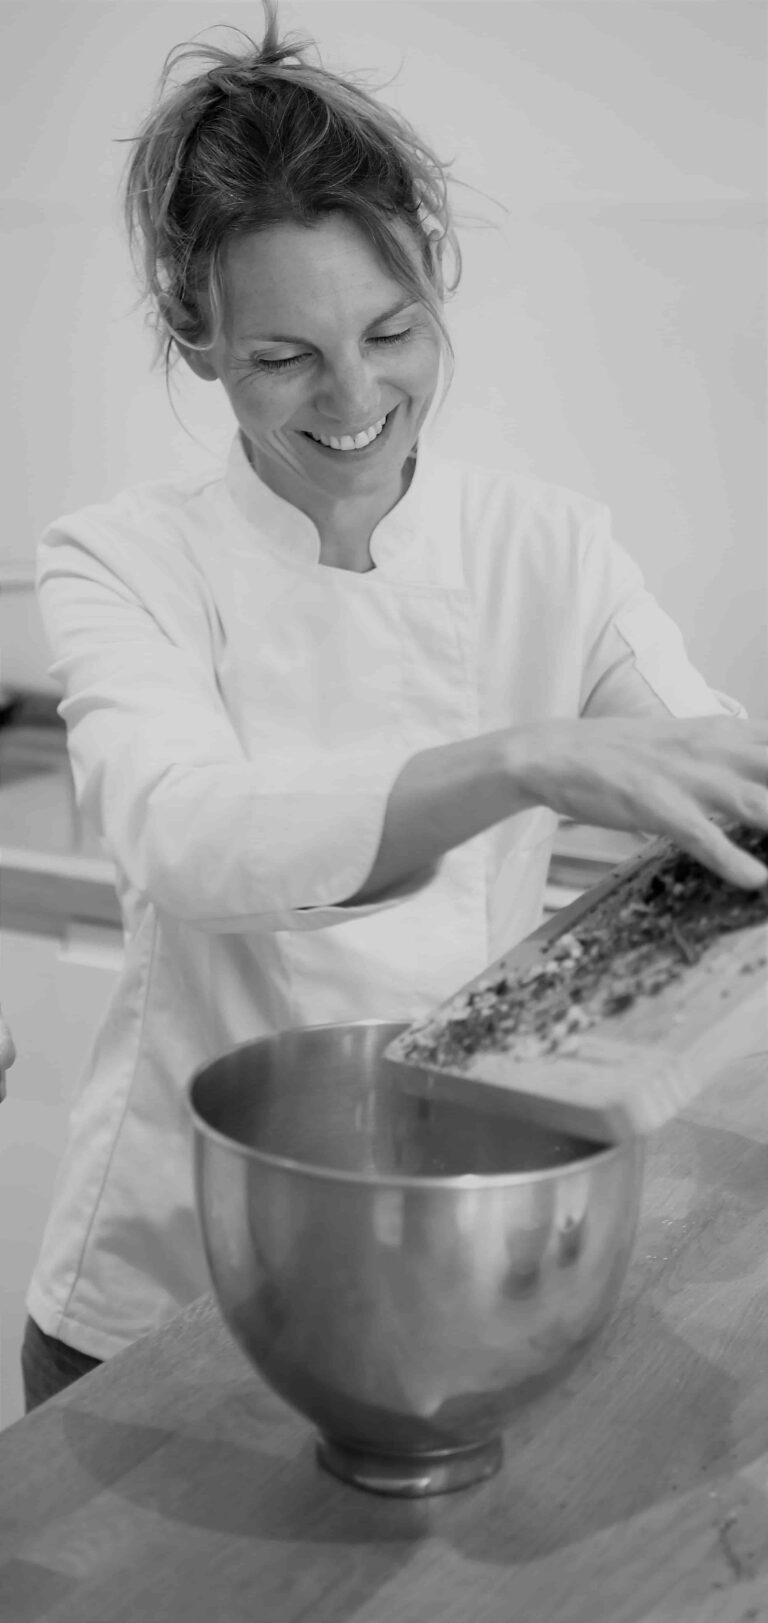 Photo en noir et blanc d'une femme en train de cuisiner.